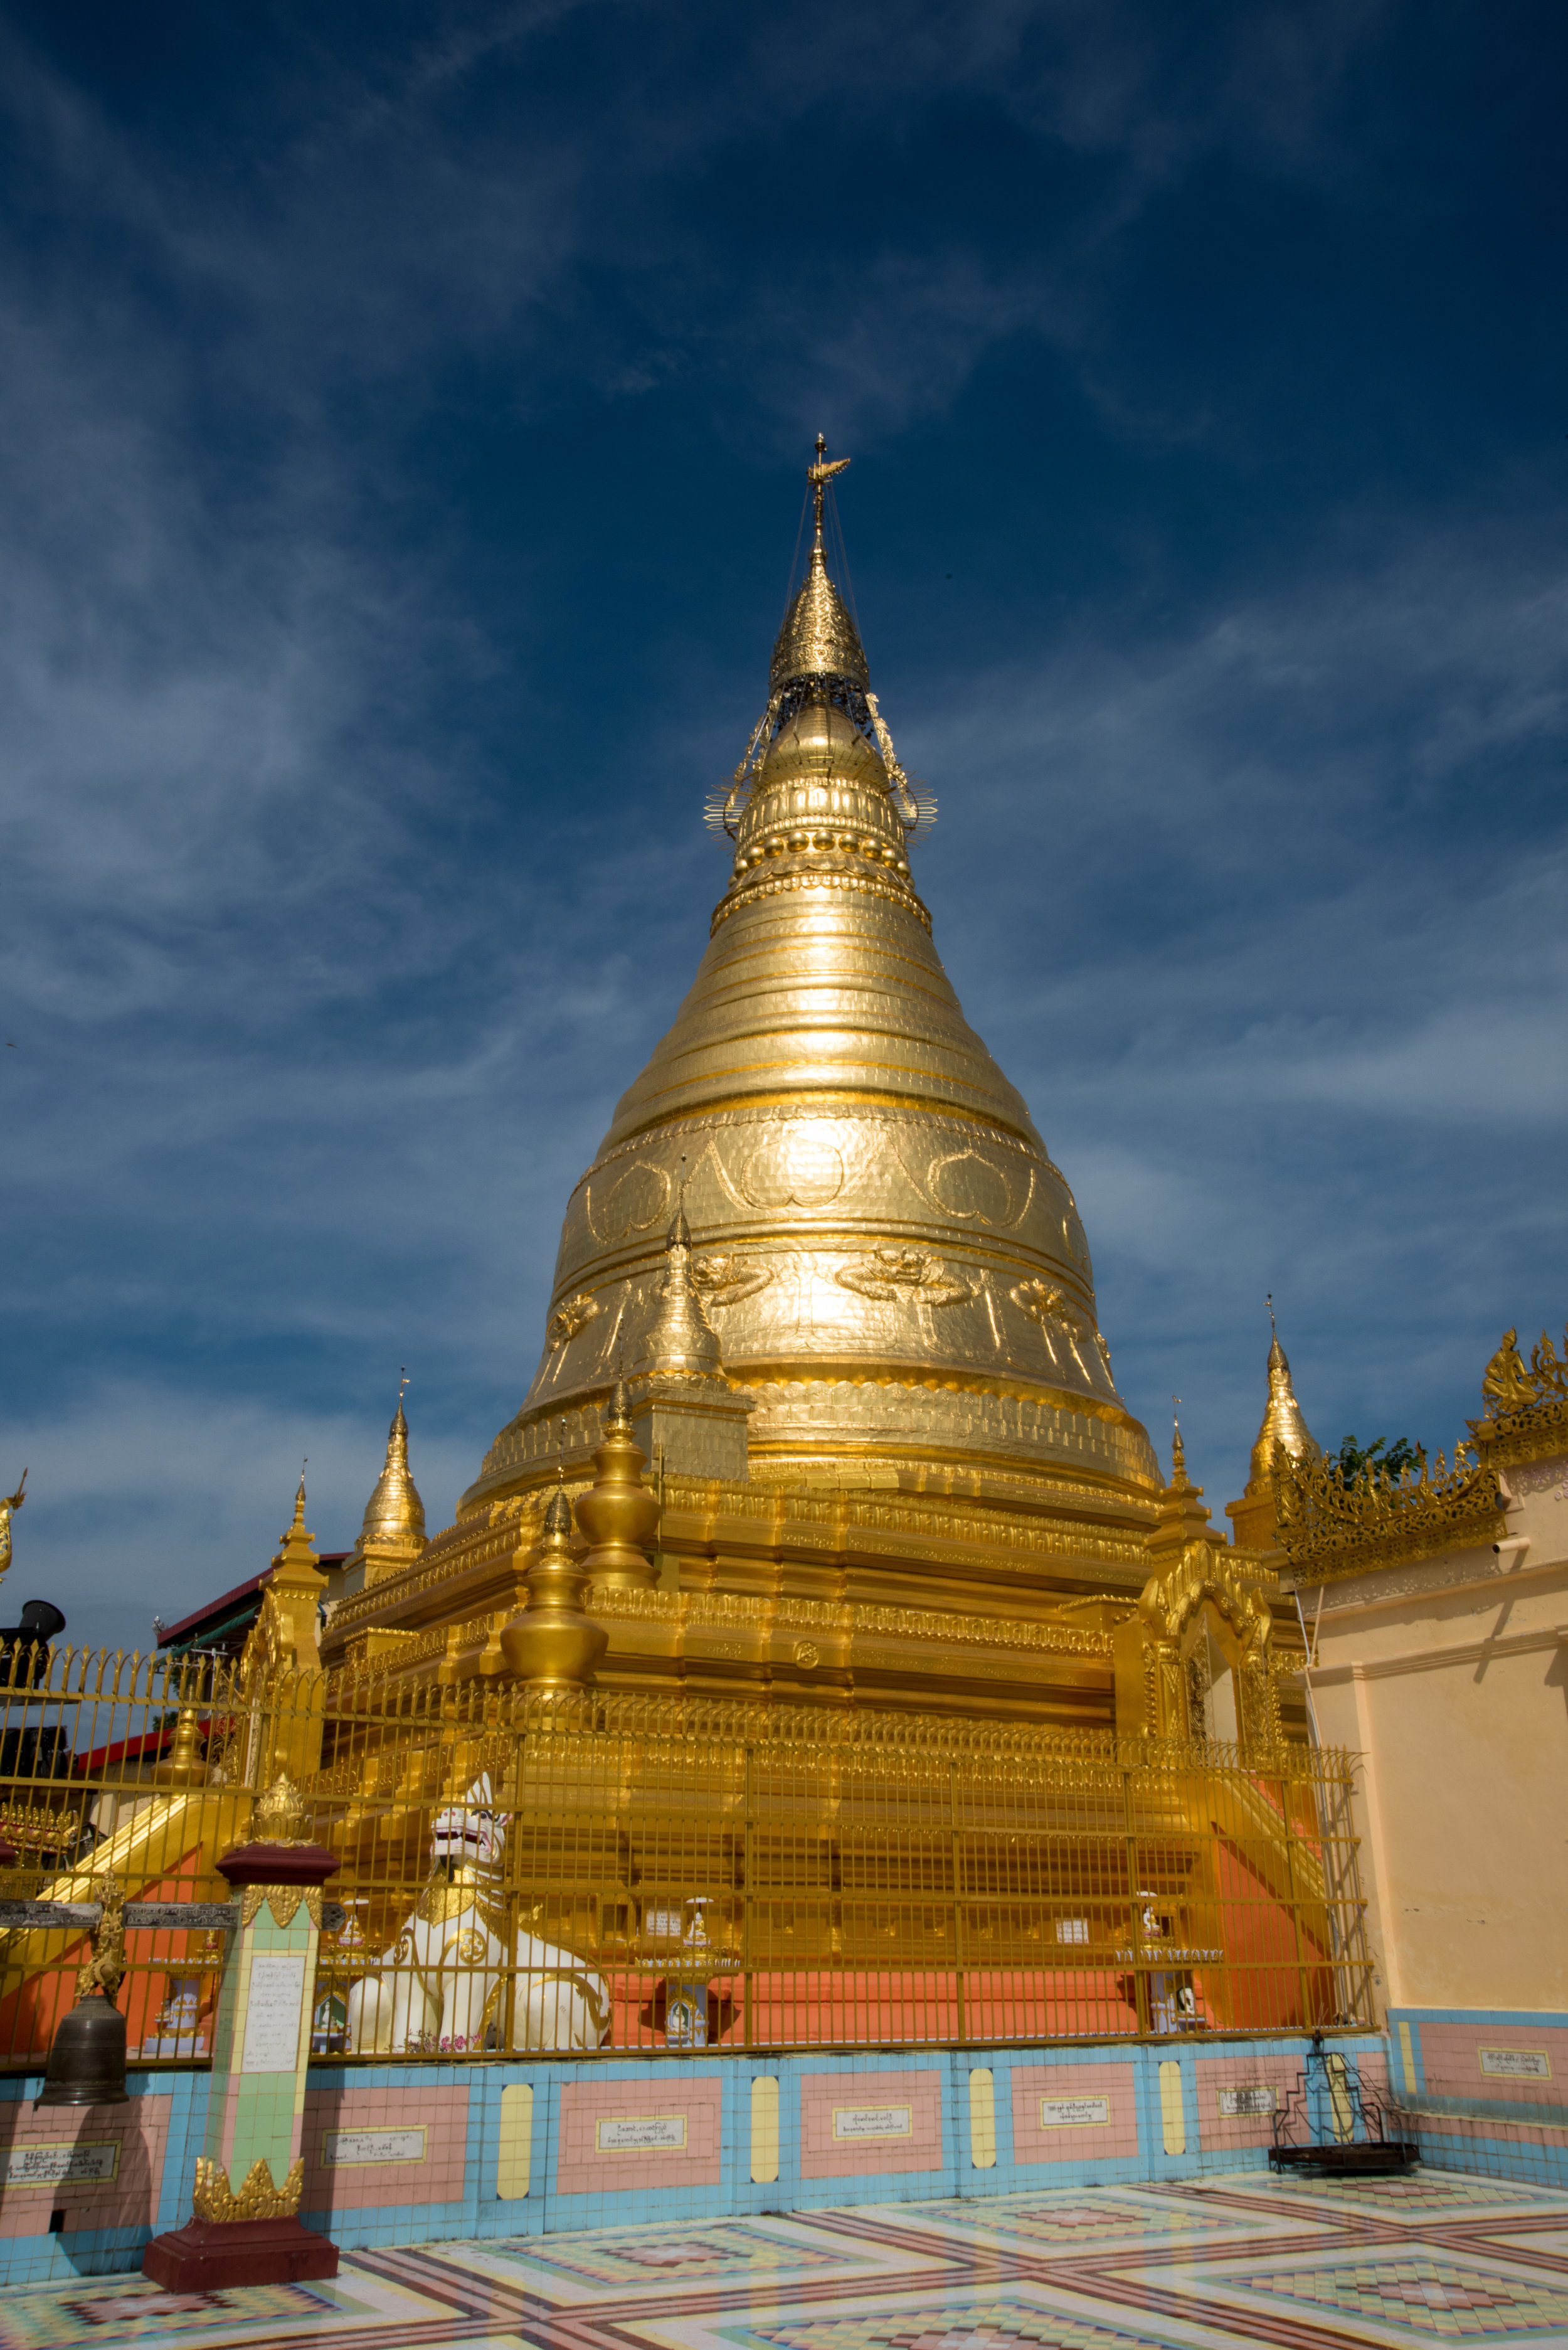 Soon U Ponya Shin Pagoda, Sagaing Hills, Mandalay, Myanmar